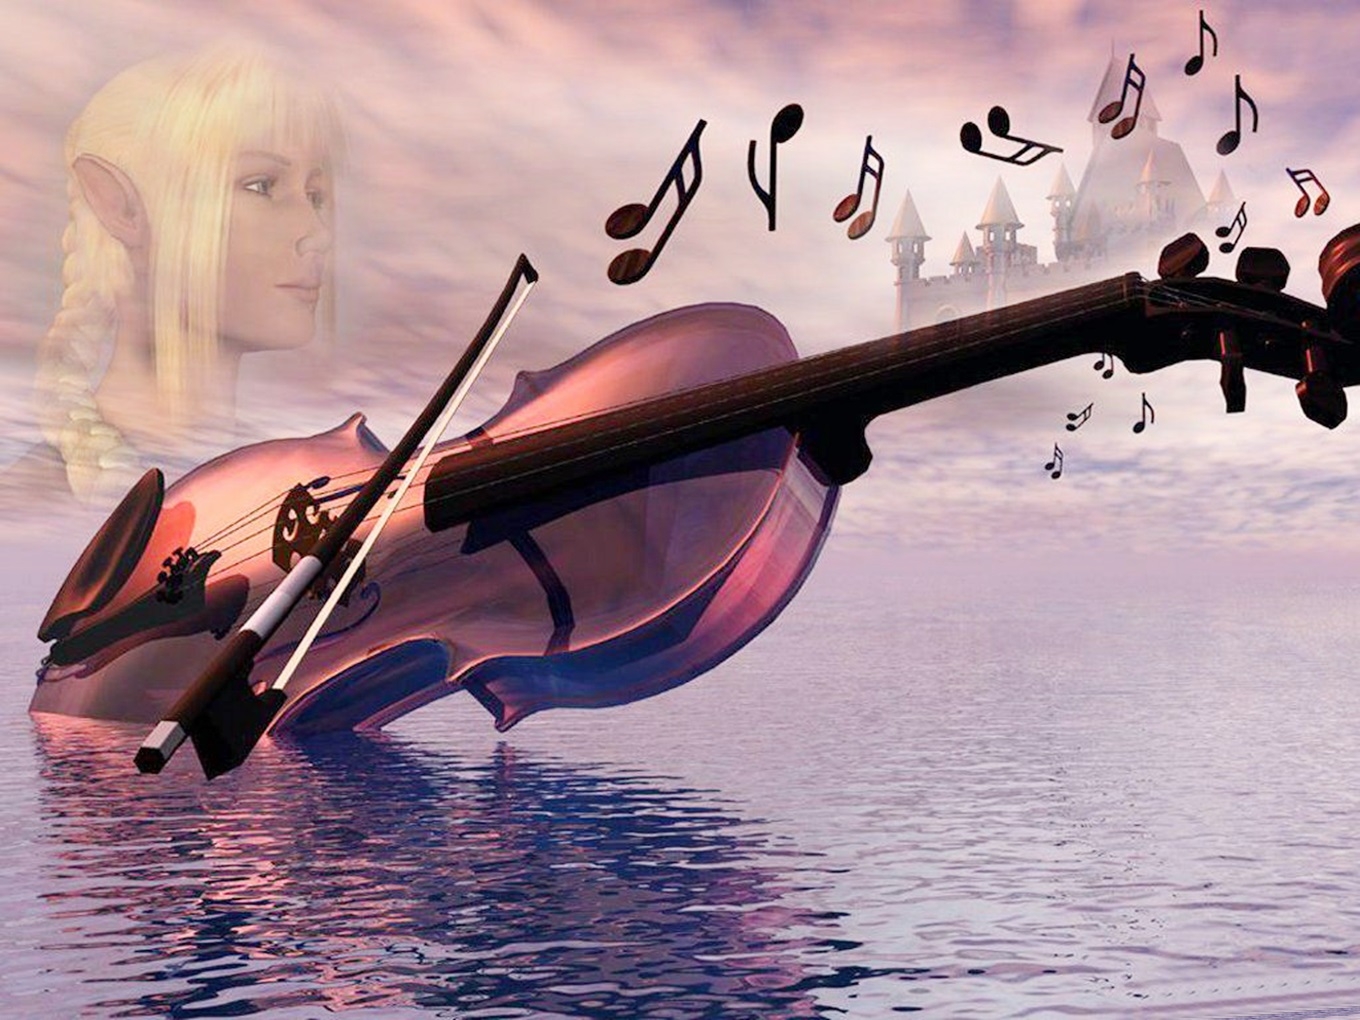 Песни от всей души 18. Скрипка. Скрипка и море. Волшебная скрипка. Скрипка и небо.